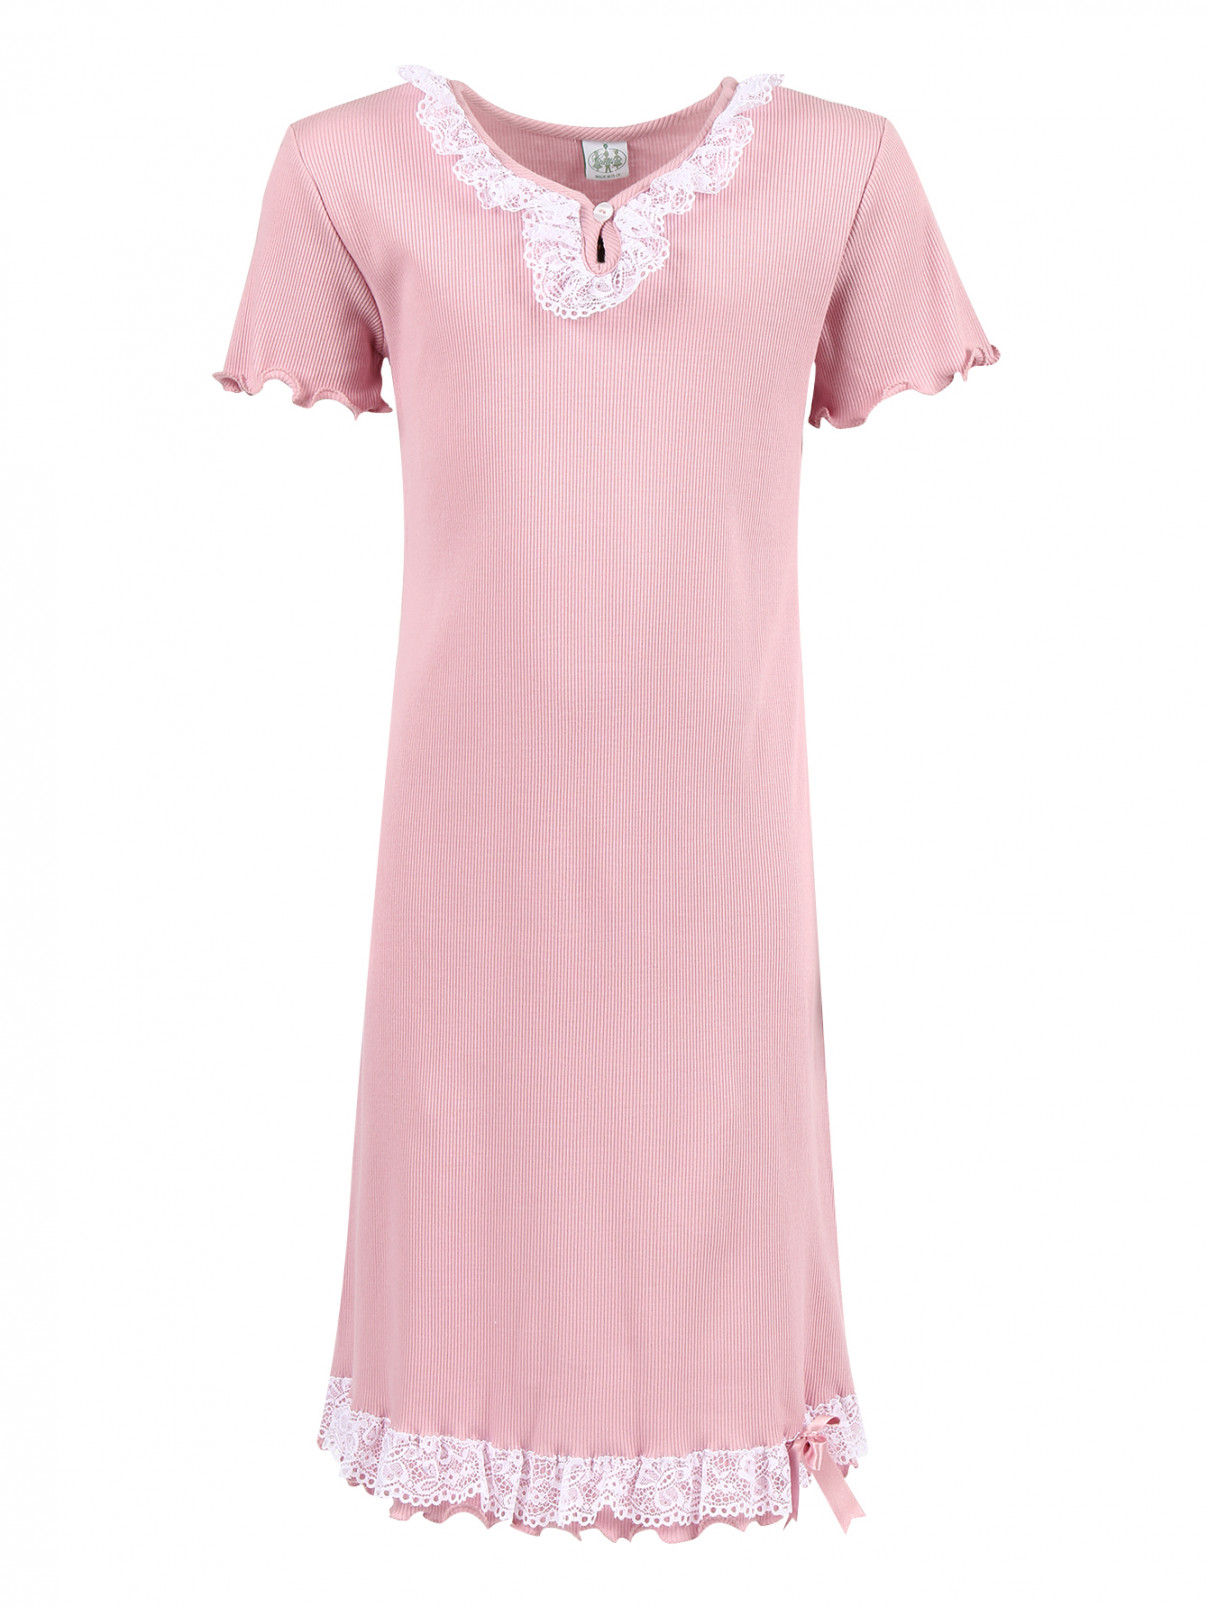 Сорочка из хлопка с кружевной отделкой Giottino  –  Общий вид  – Цвет:  Розовый